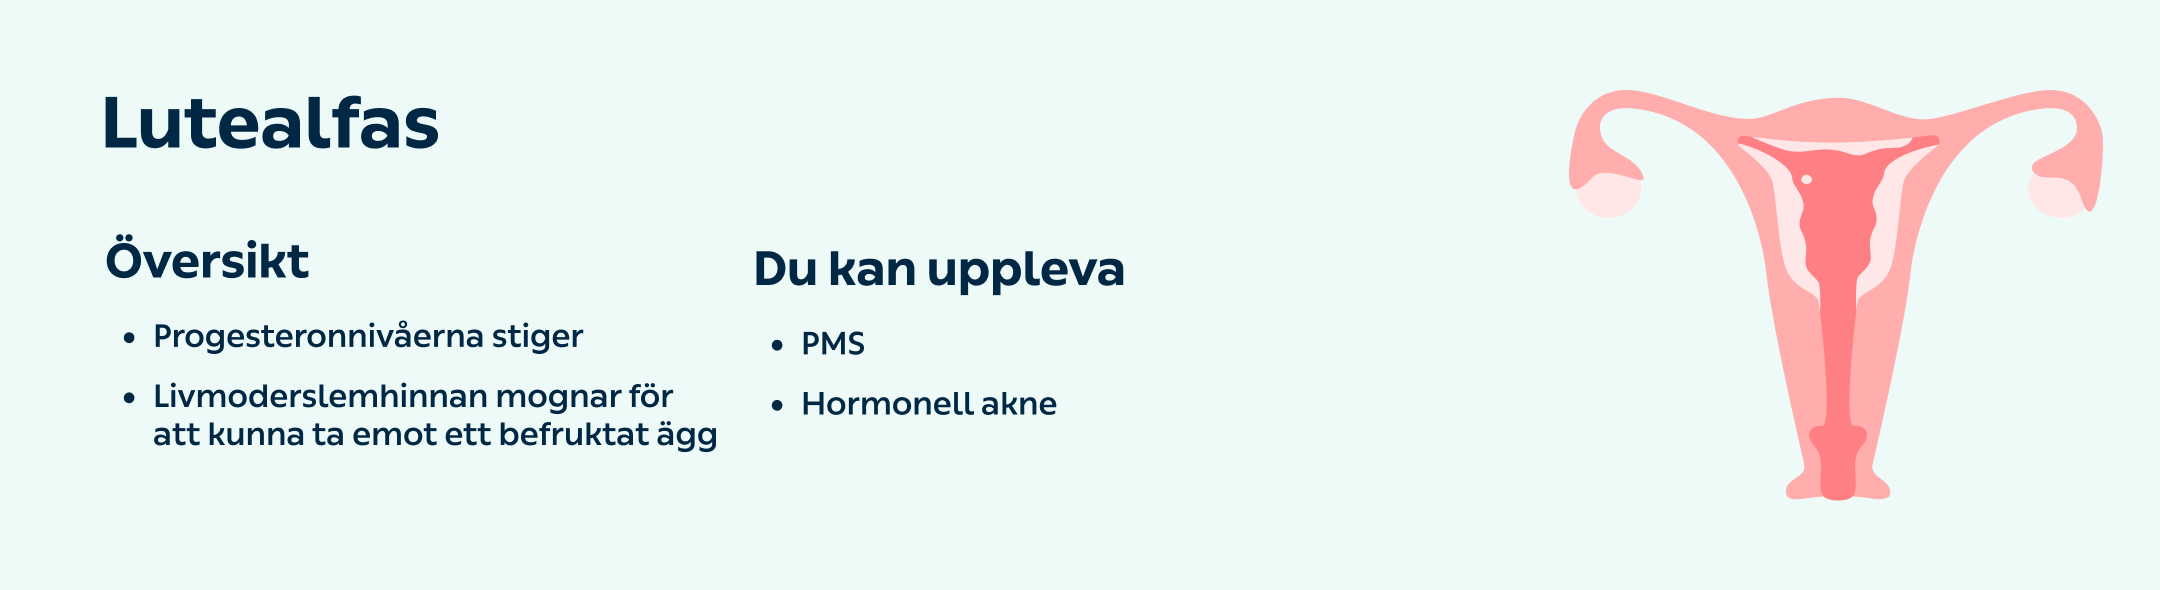 kry.se > Din hälsa > Menscykeln – så fungerar den > Content > Image Lutealfas